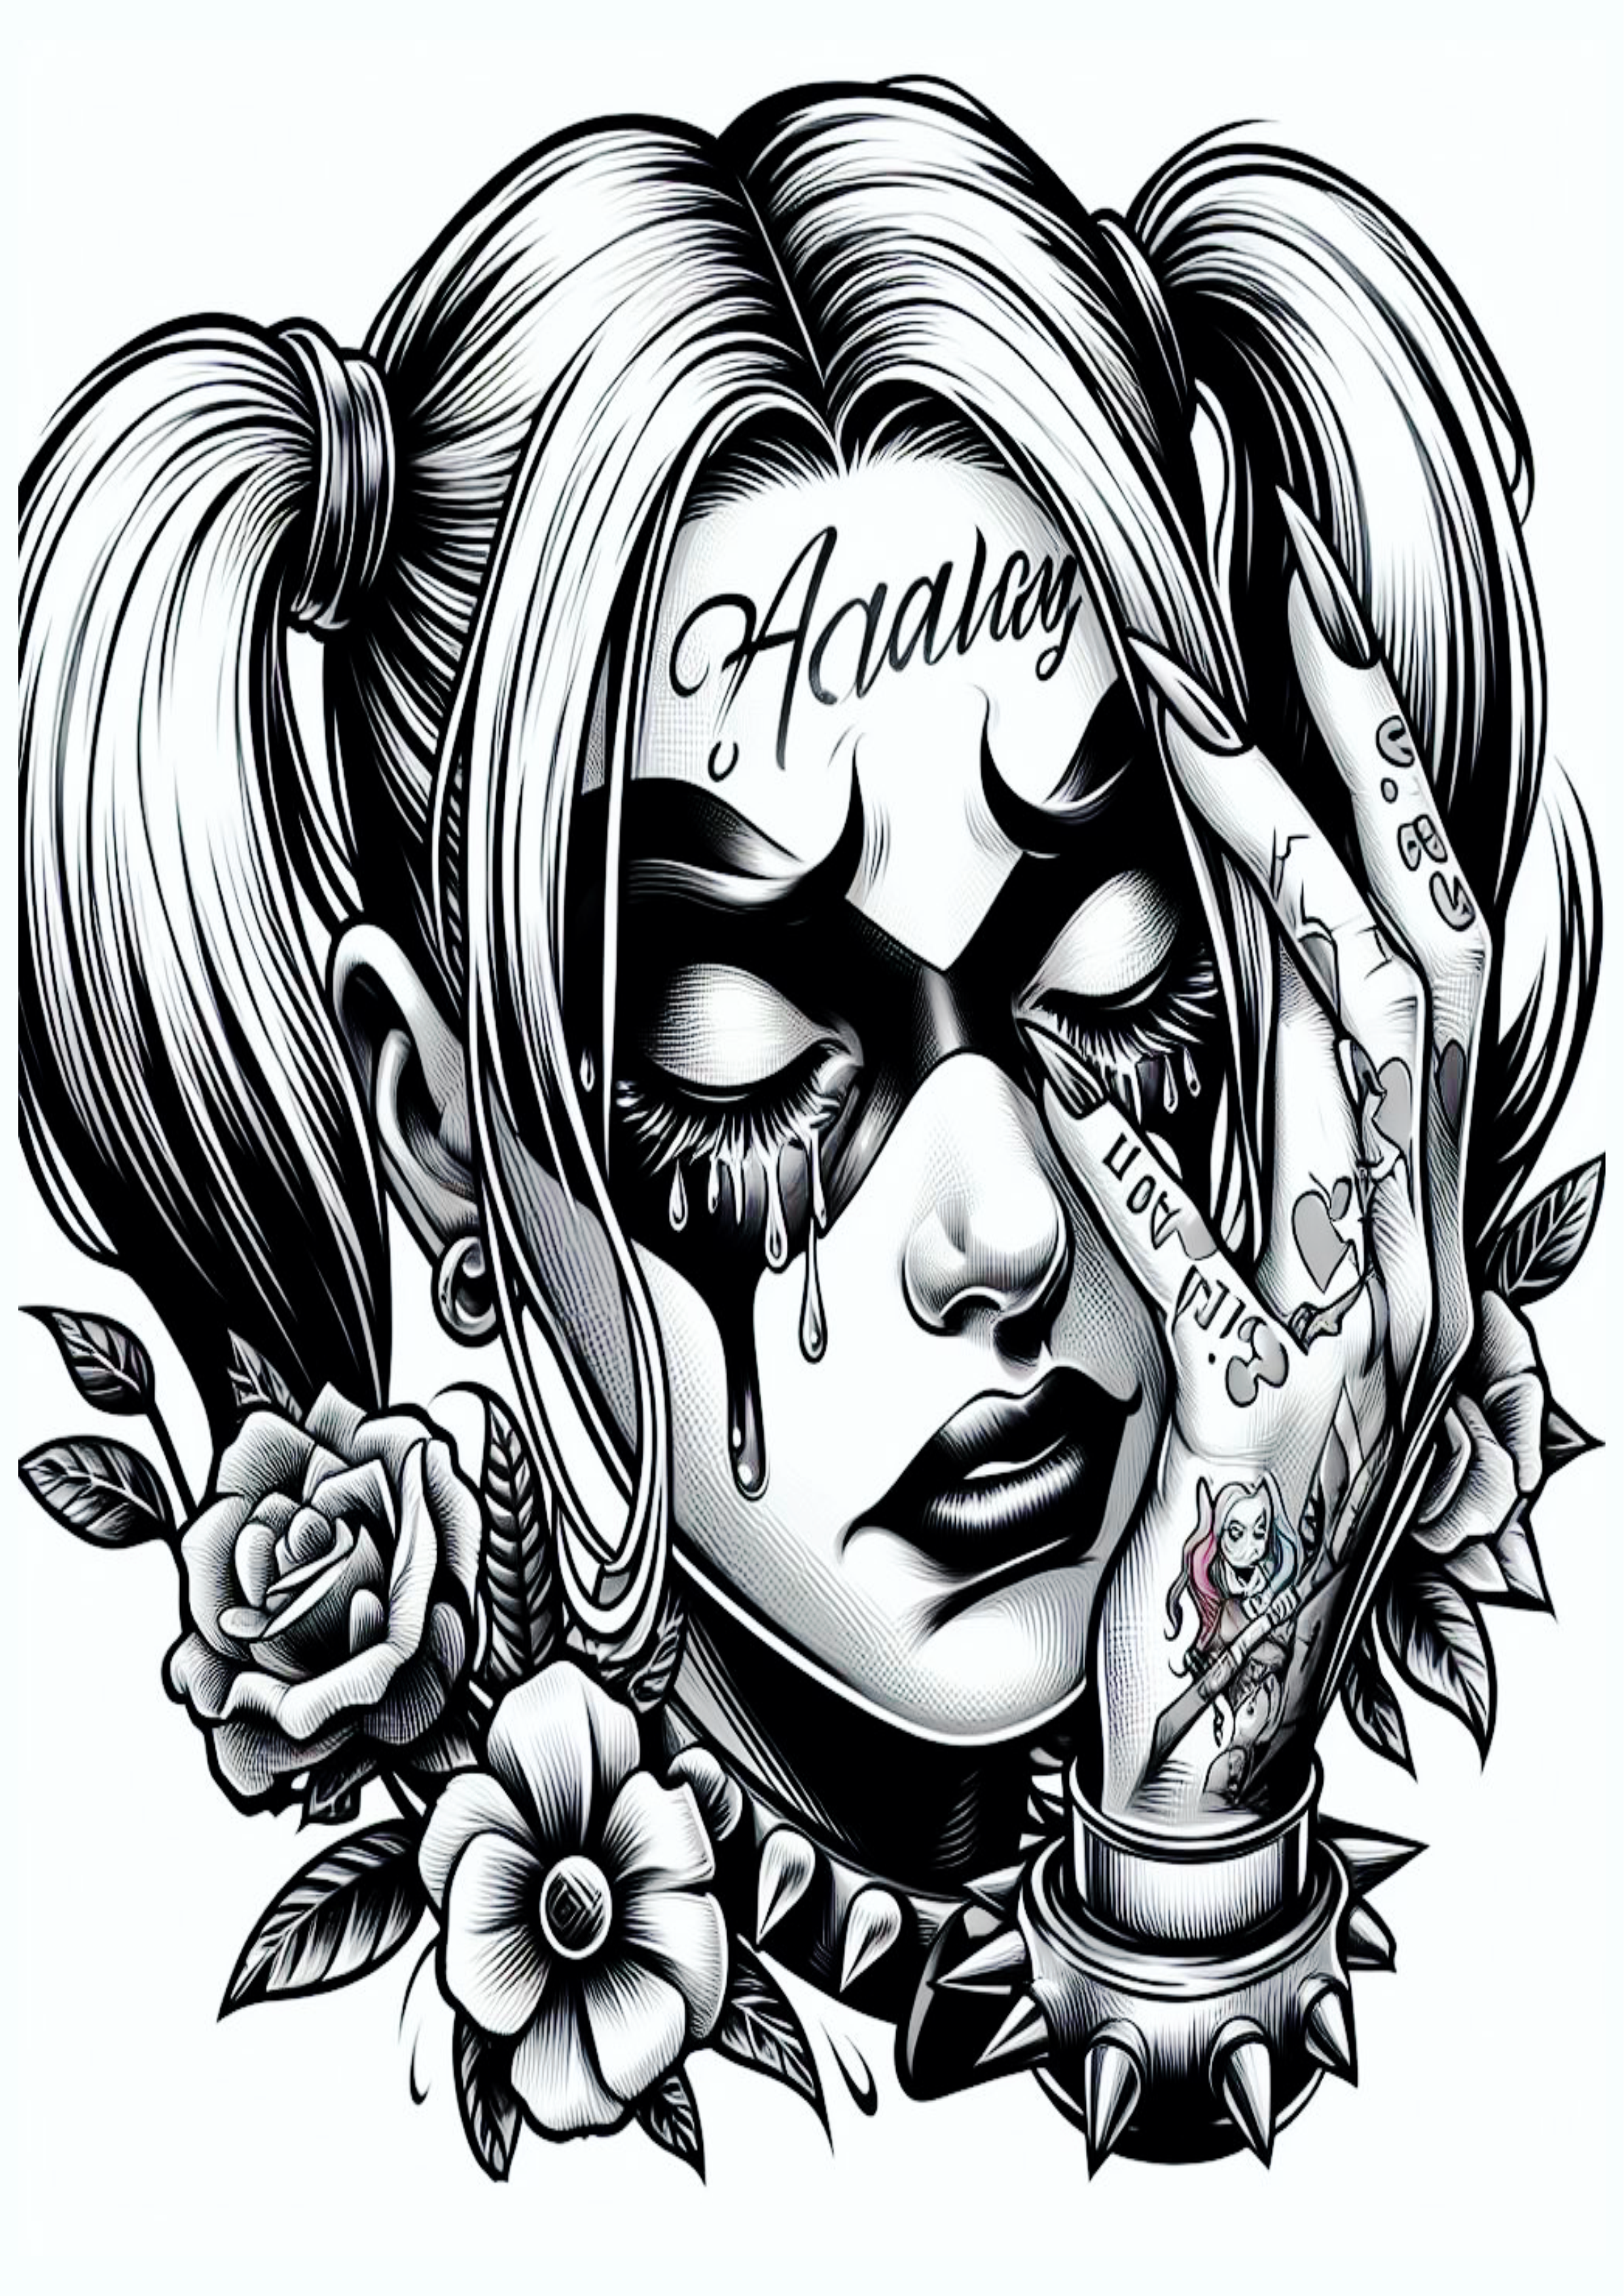 Arlequina chorando desenho monocromático para tatuagem Harley Quinn png